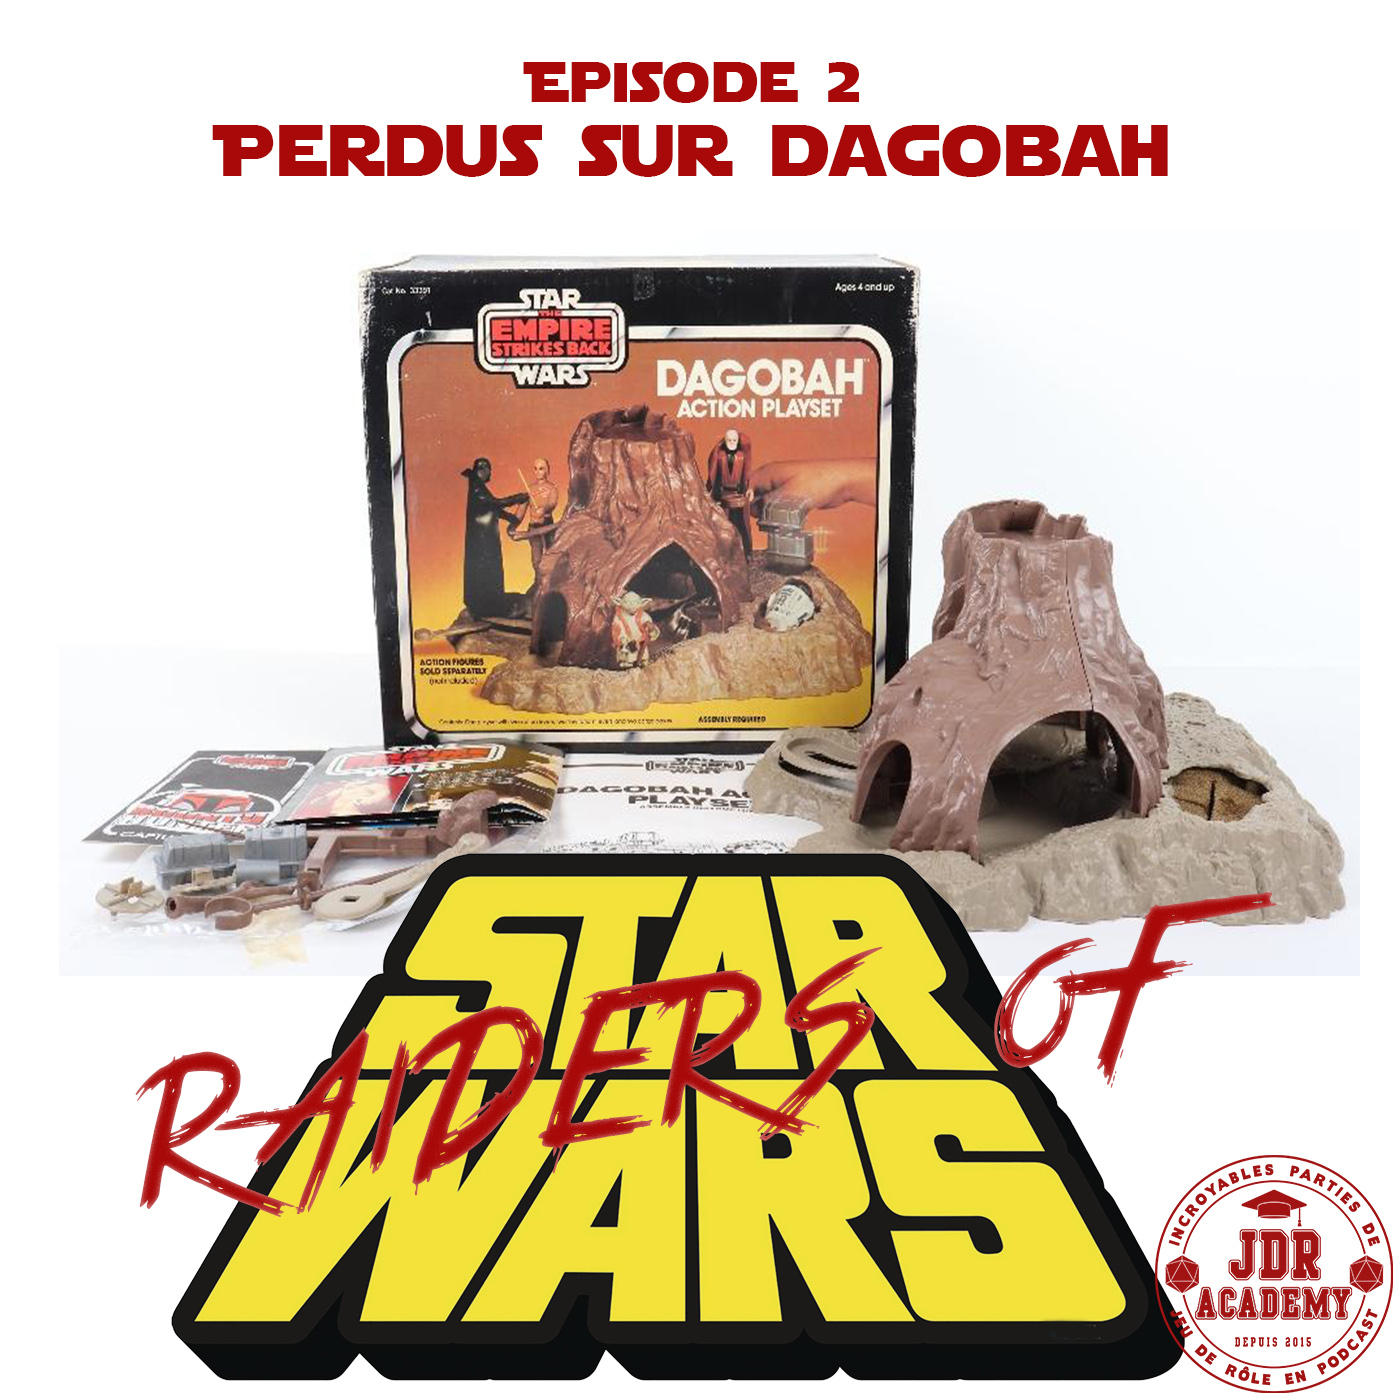 RAIDERS OF STAR WARS #02 – Perdus sur Dagobah